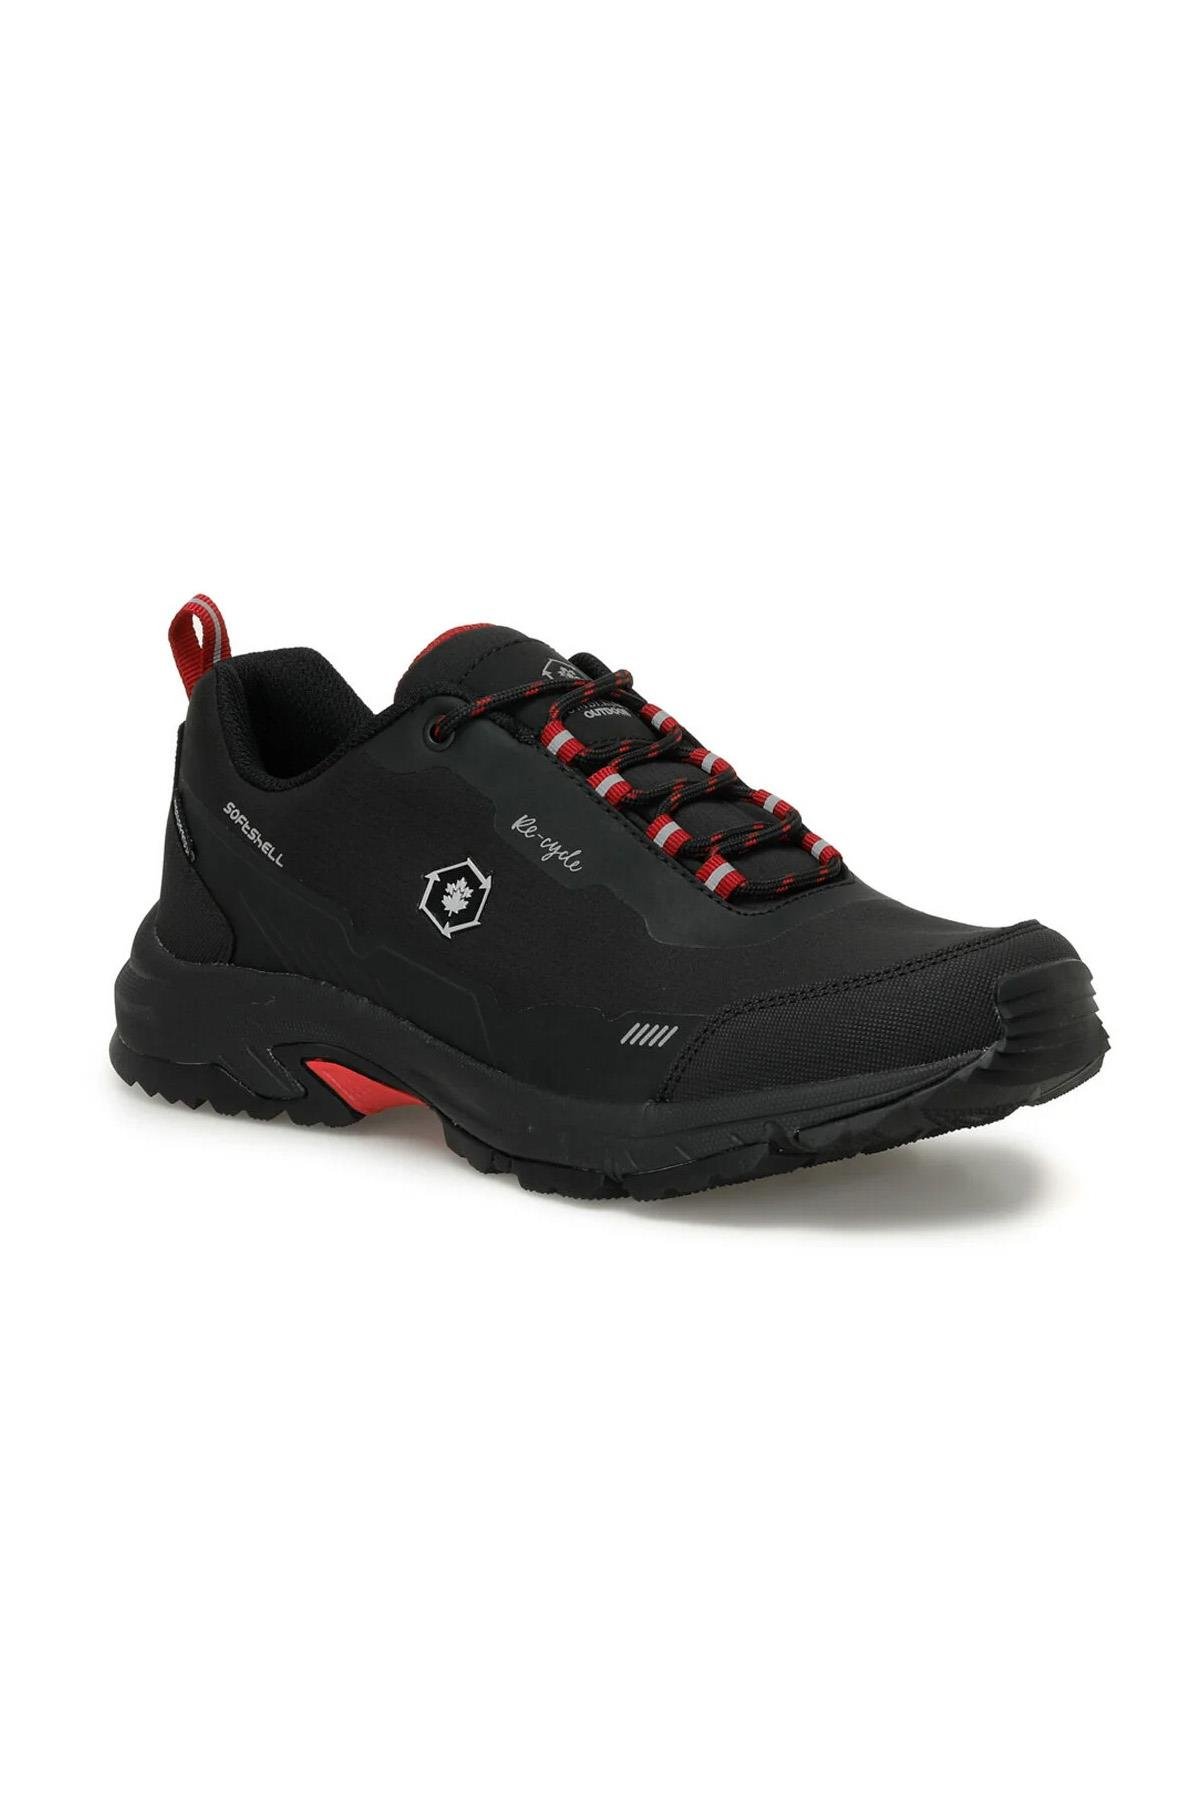 Eco Low Softshell Su Geçirmez Erkek Spor Bot Ayakkabı Siyah - Kırmızı